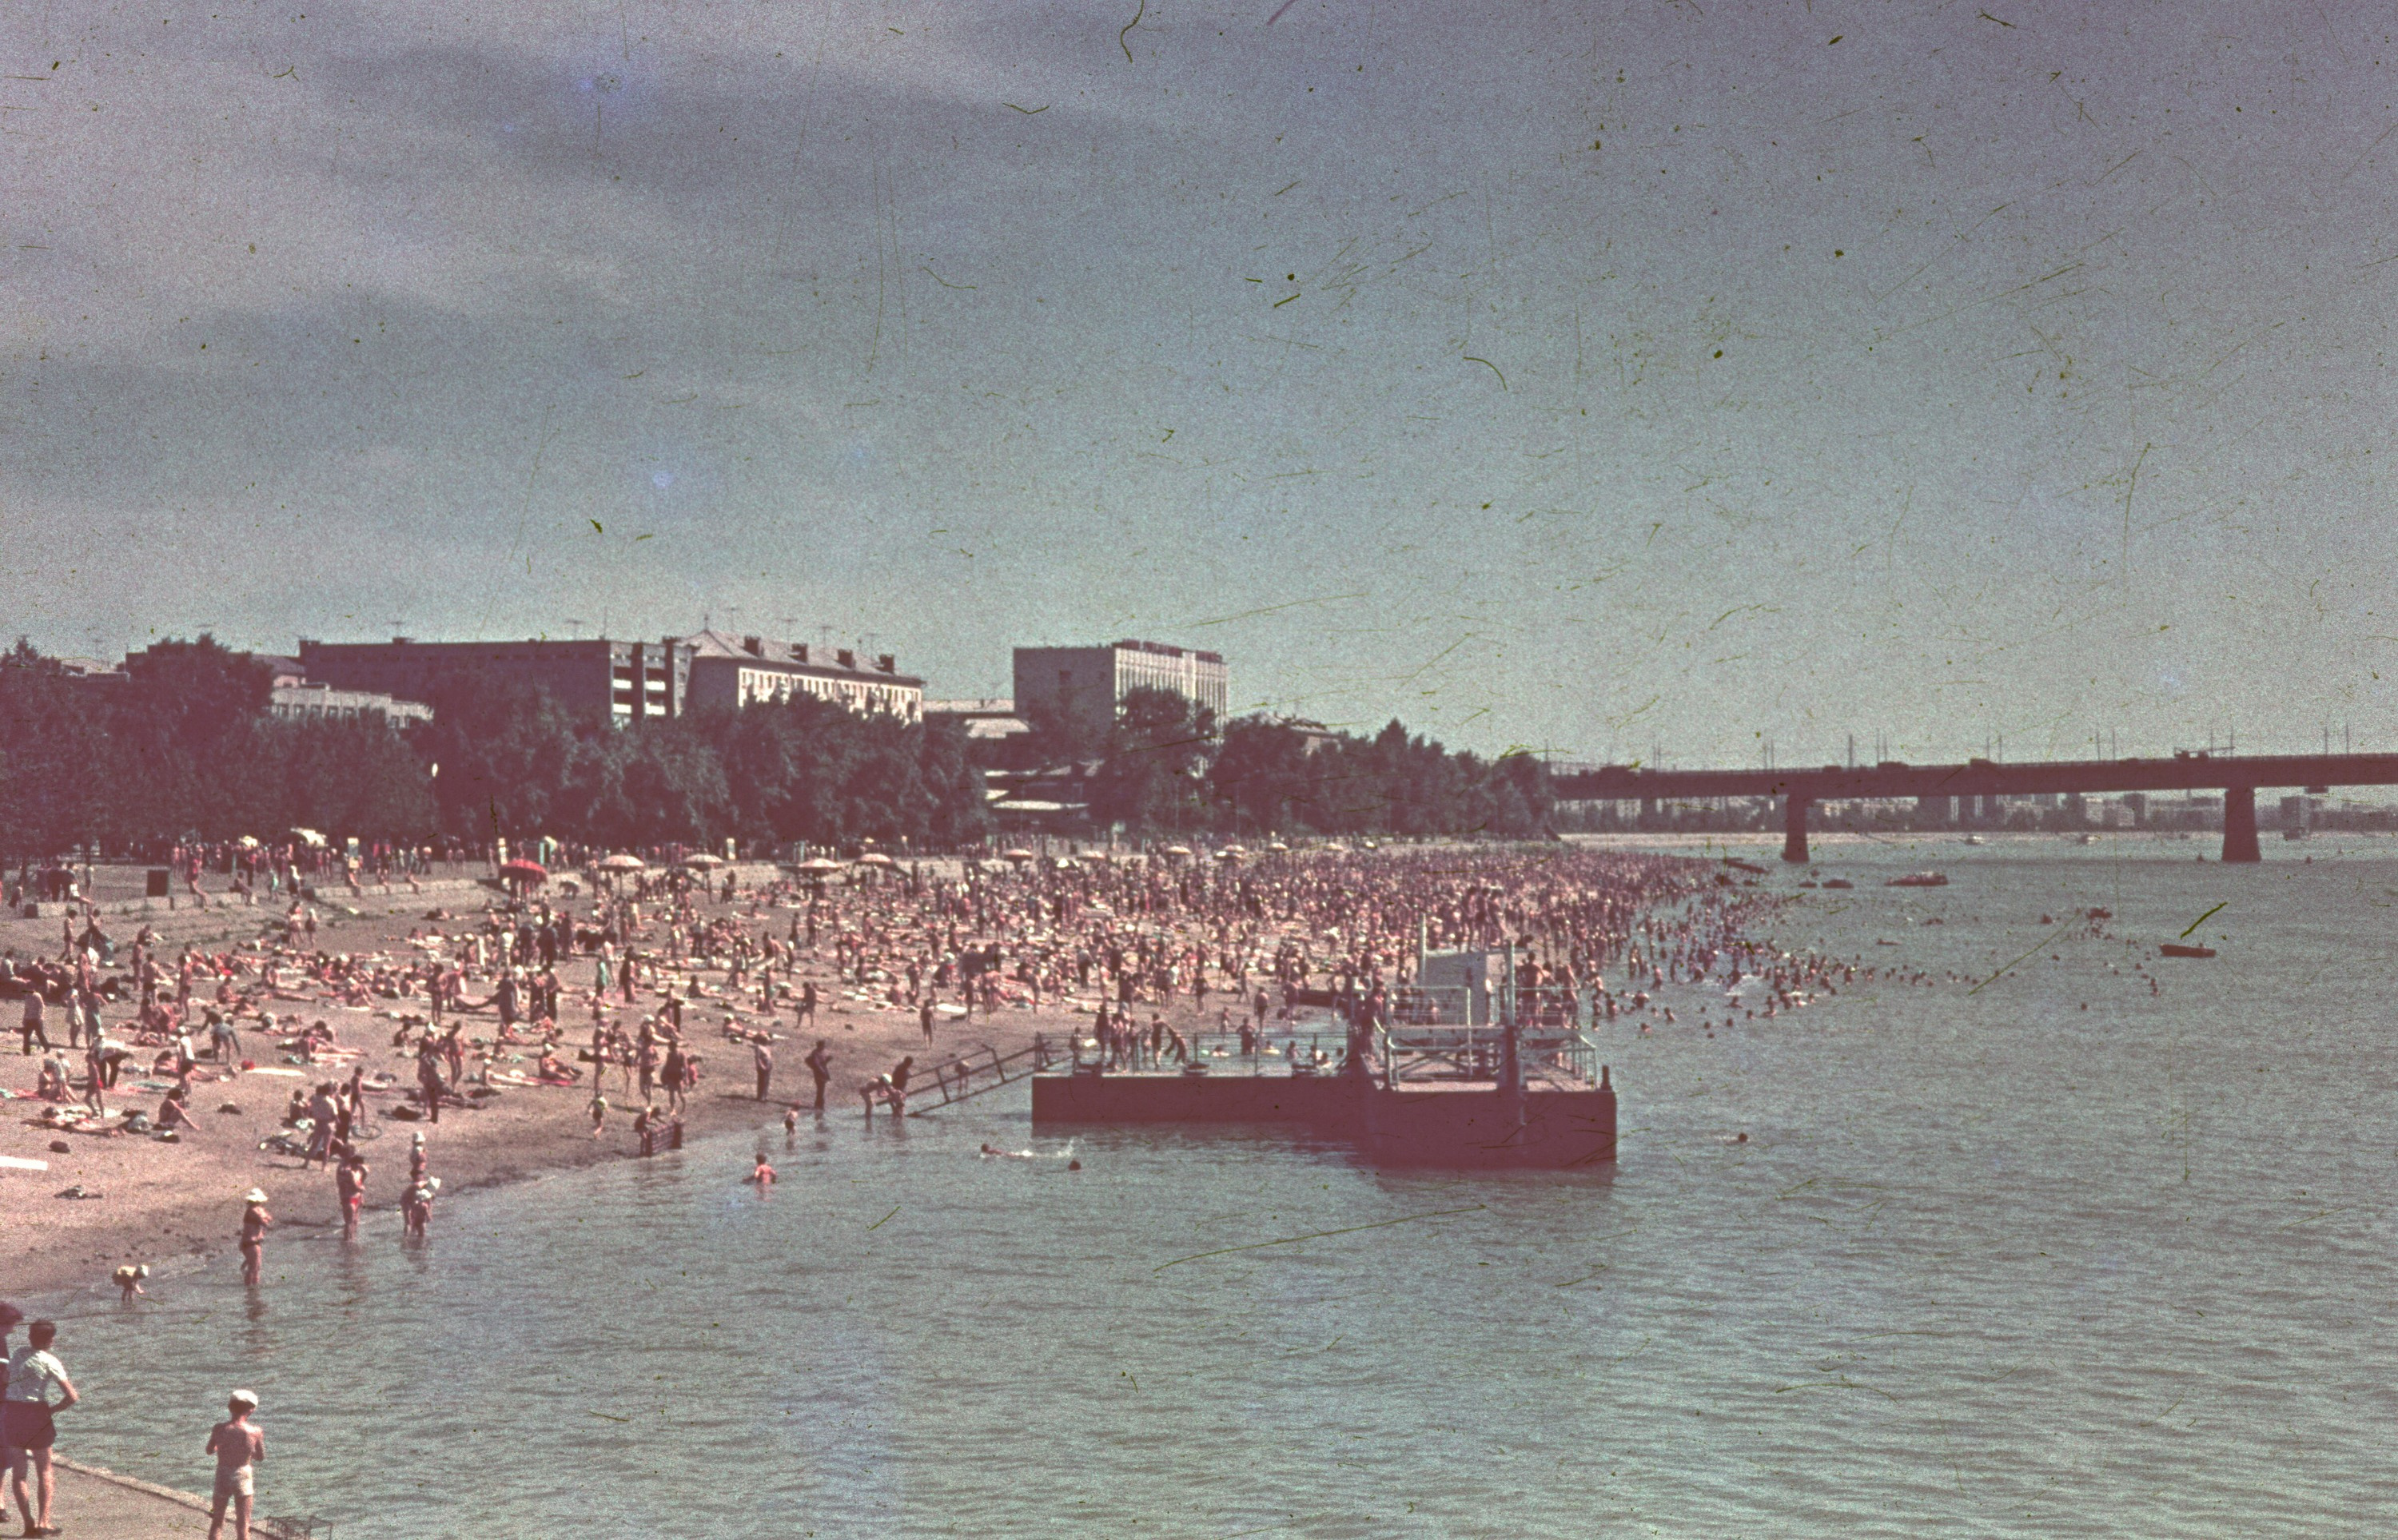 На Куйбышевском пляже людей видимо-невидимо что в 1985 году, <a href="https://ngs55.ru/text/summer/2023/06/03/72363587/" class="_" target="_blank">что сейчас</a>